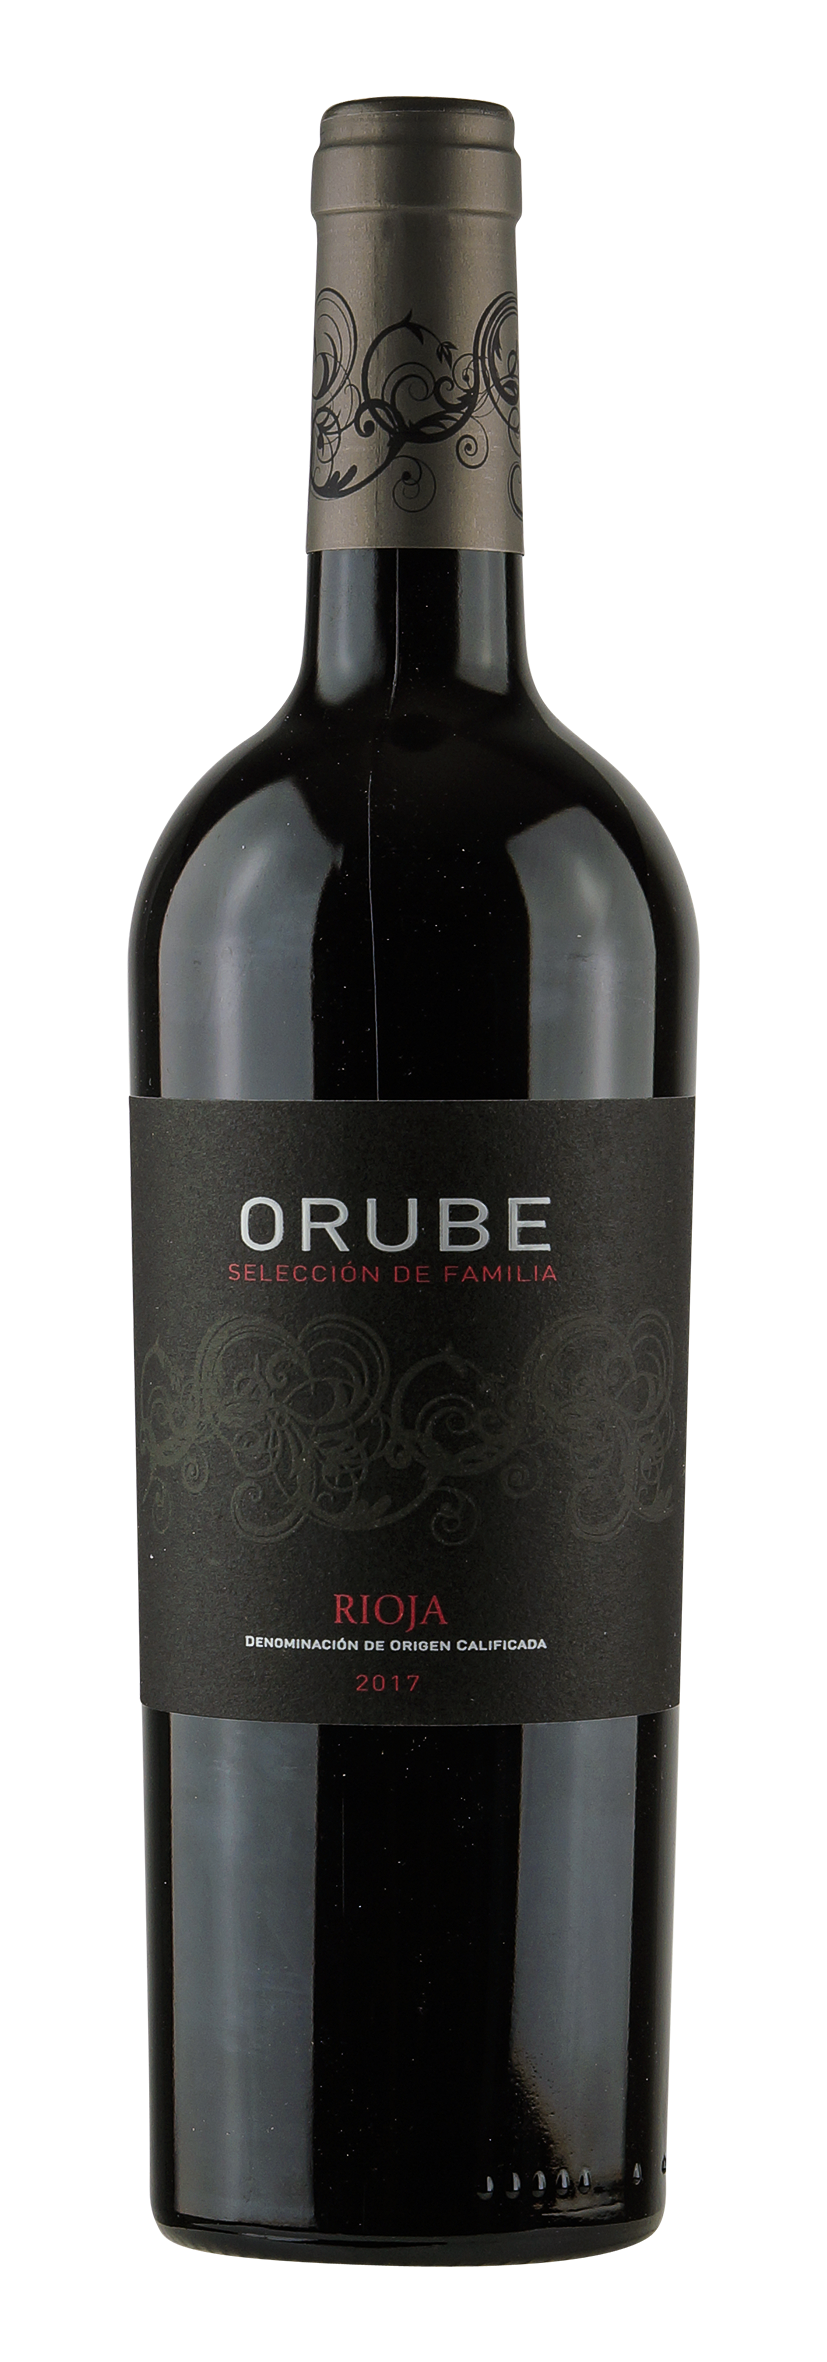 Rioja DOCa Orube Selección de Familia 2017